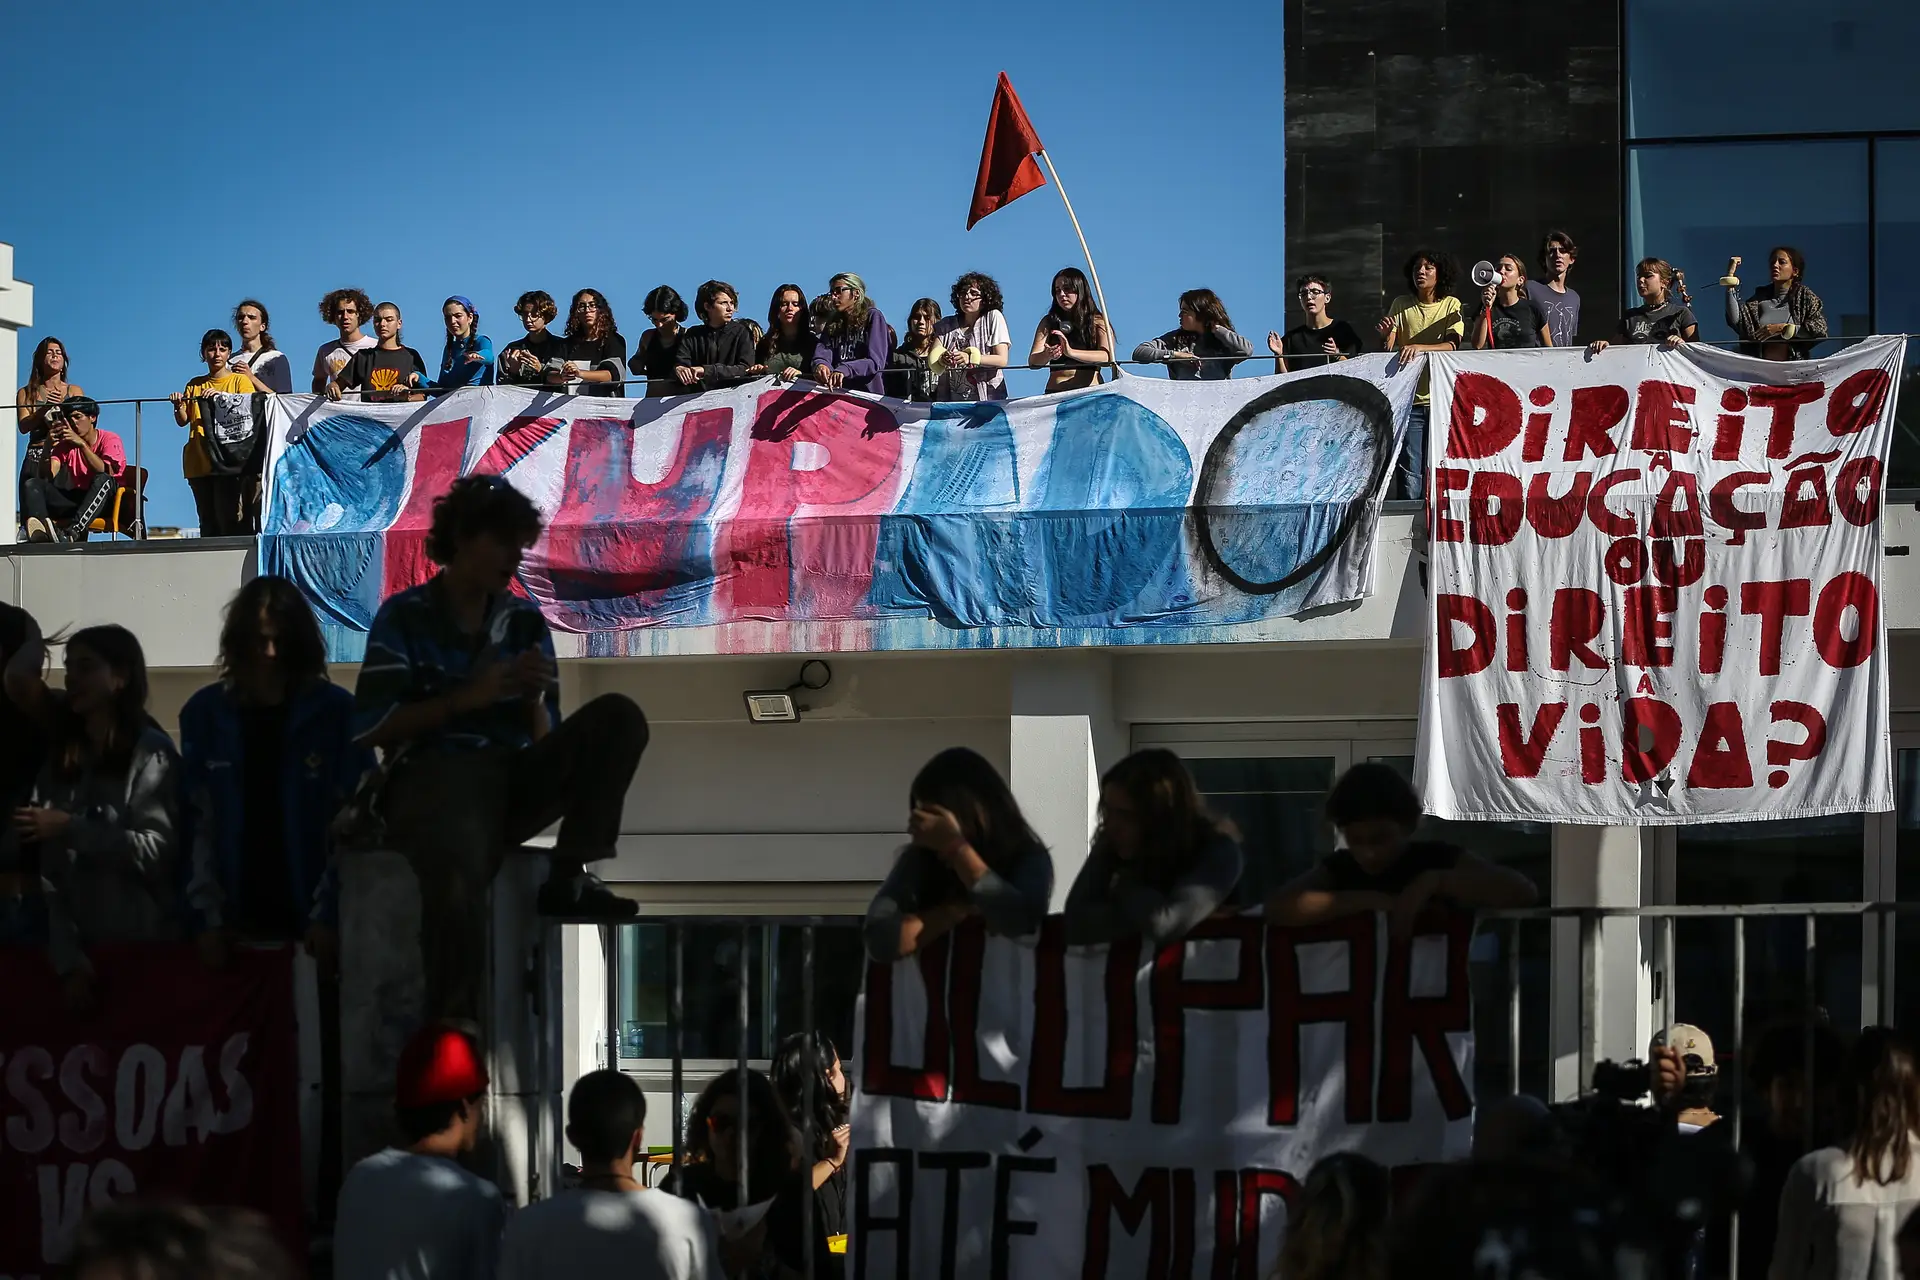 Um grupo de alunos da escola secundária António Arroio colou-se às portas da escola, bloqueando a entrada, em protesto pelo fim dos combustíveis fósseis, e houve estudantes em protesto no telhado.